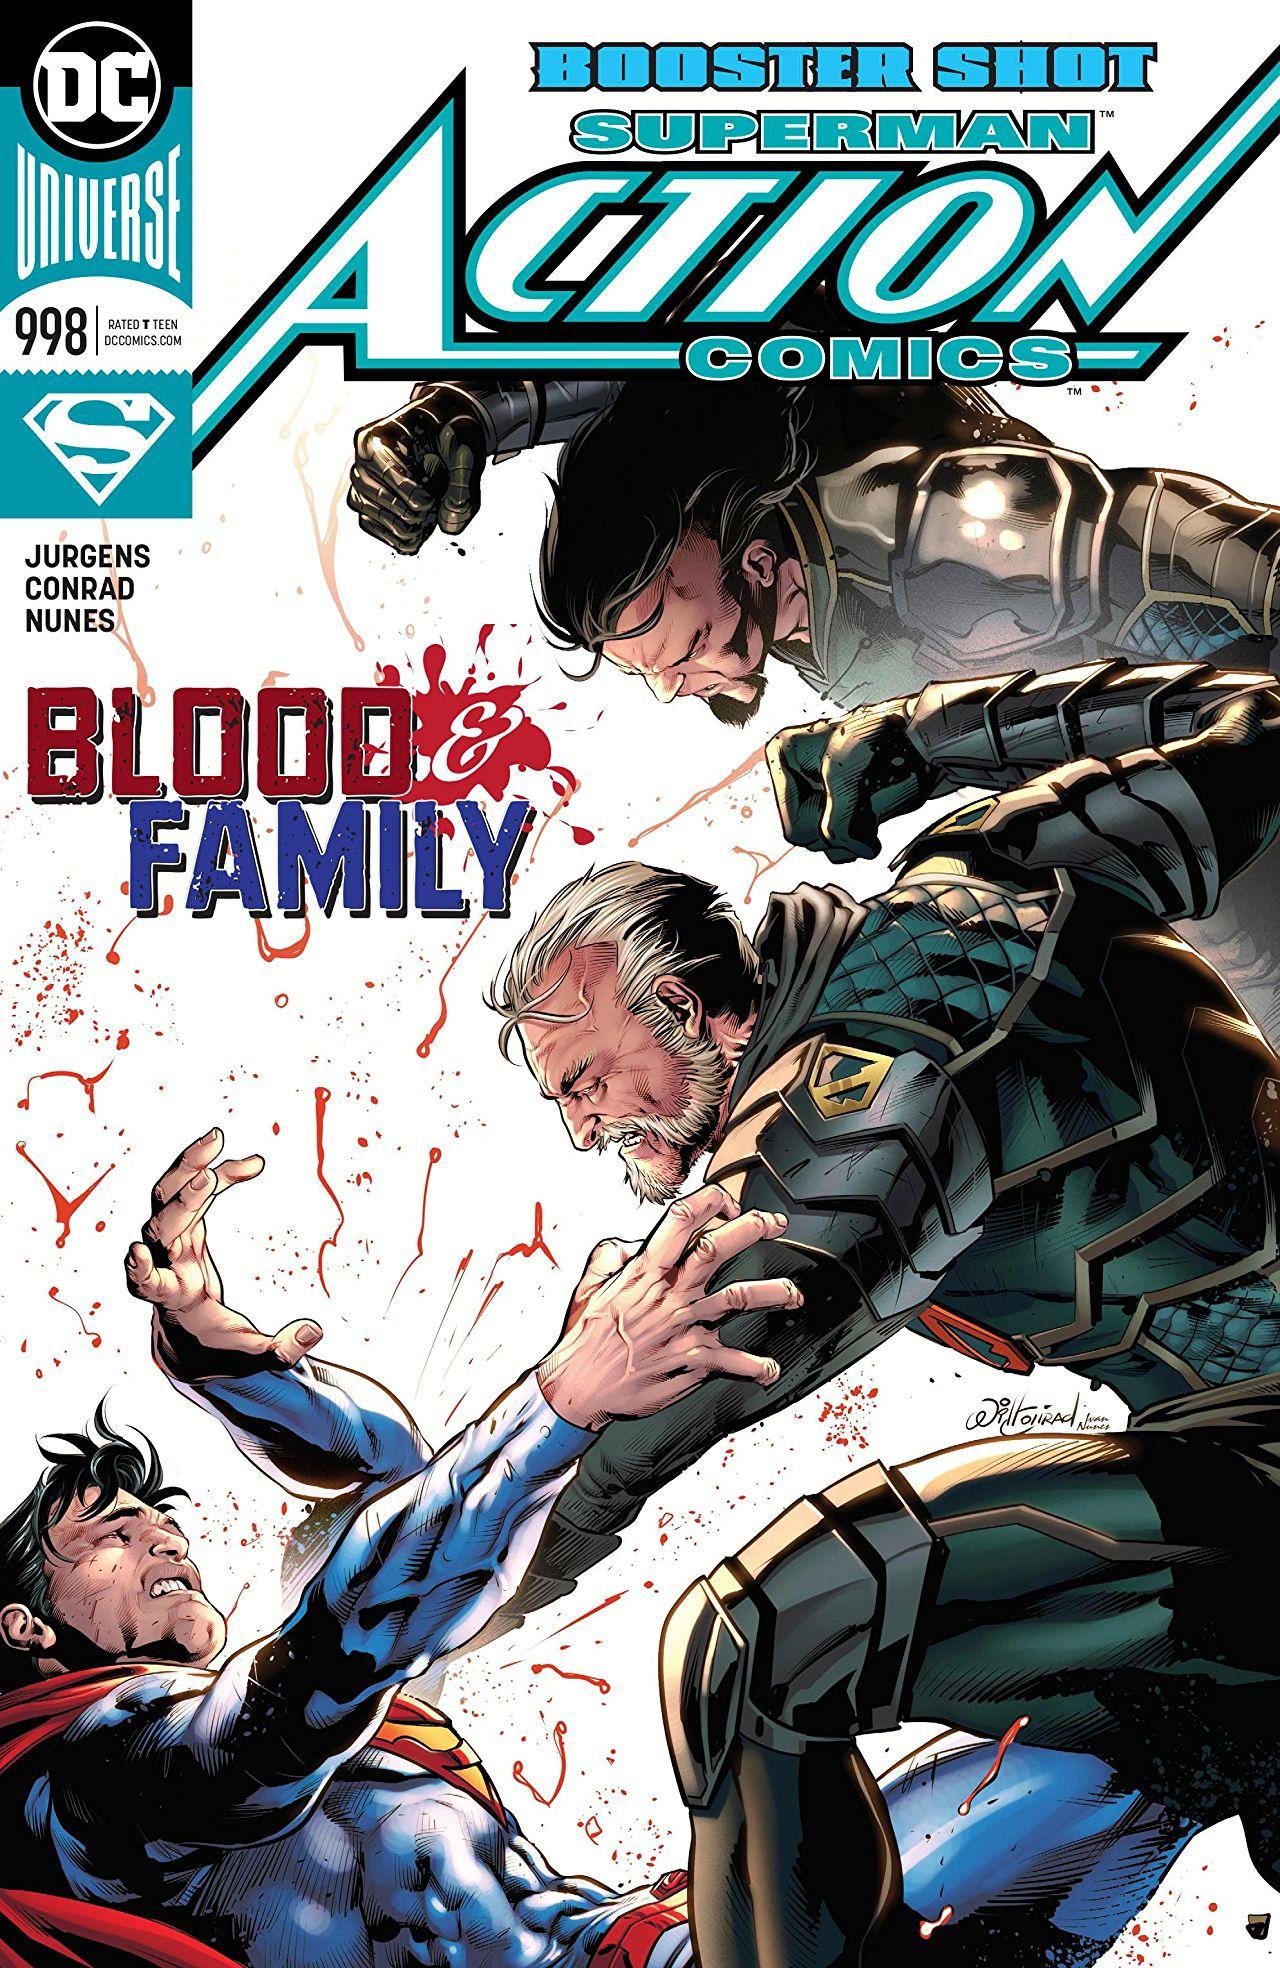 Action Comics Vol. 1 #998